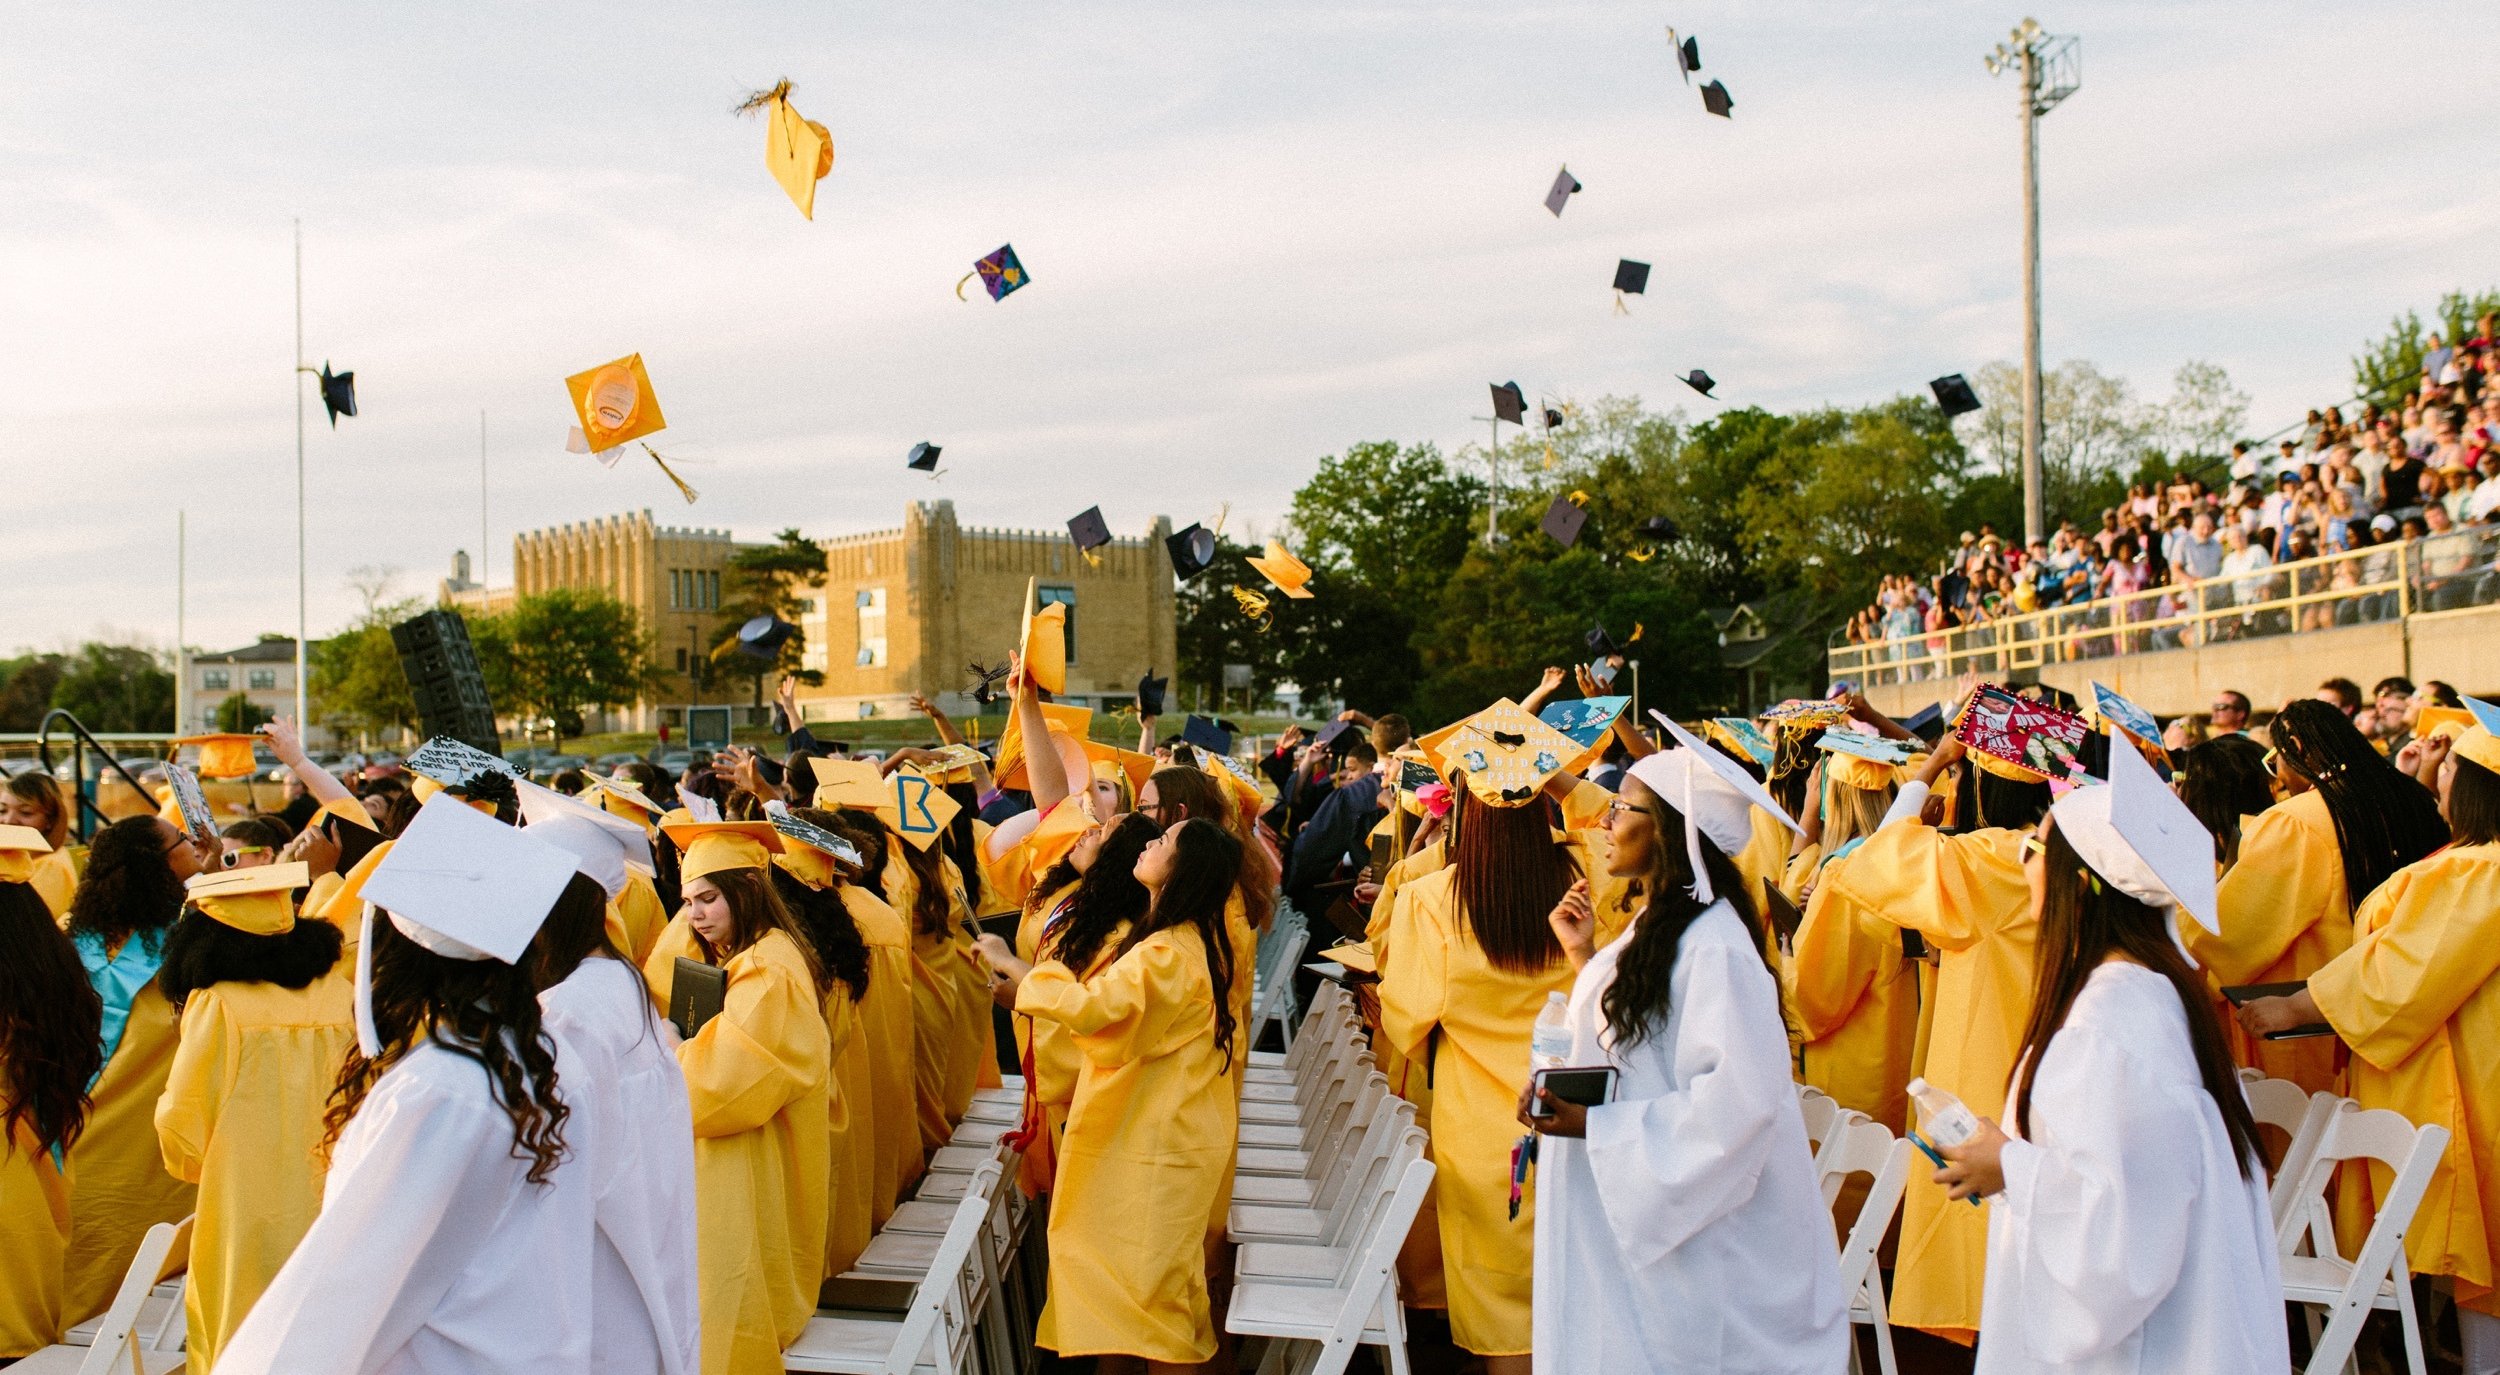 حفل التخرج مع الطلاب في قبعة وثوب الأصفر والأبيض ، ورمي قبعات في الهواء احتفالا.